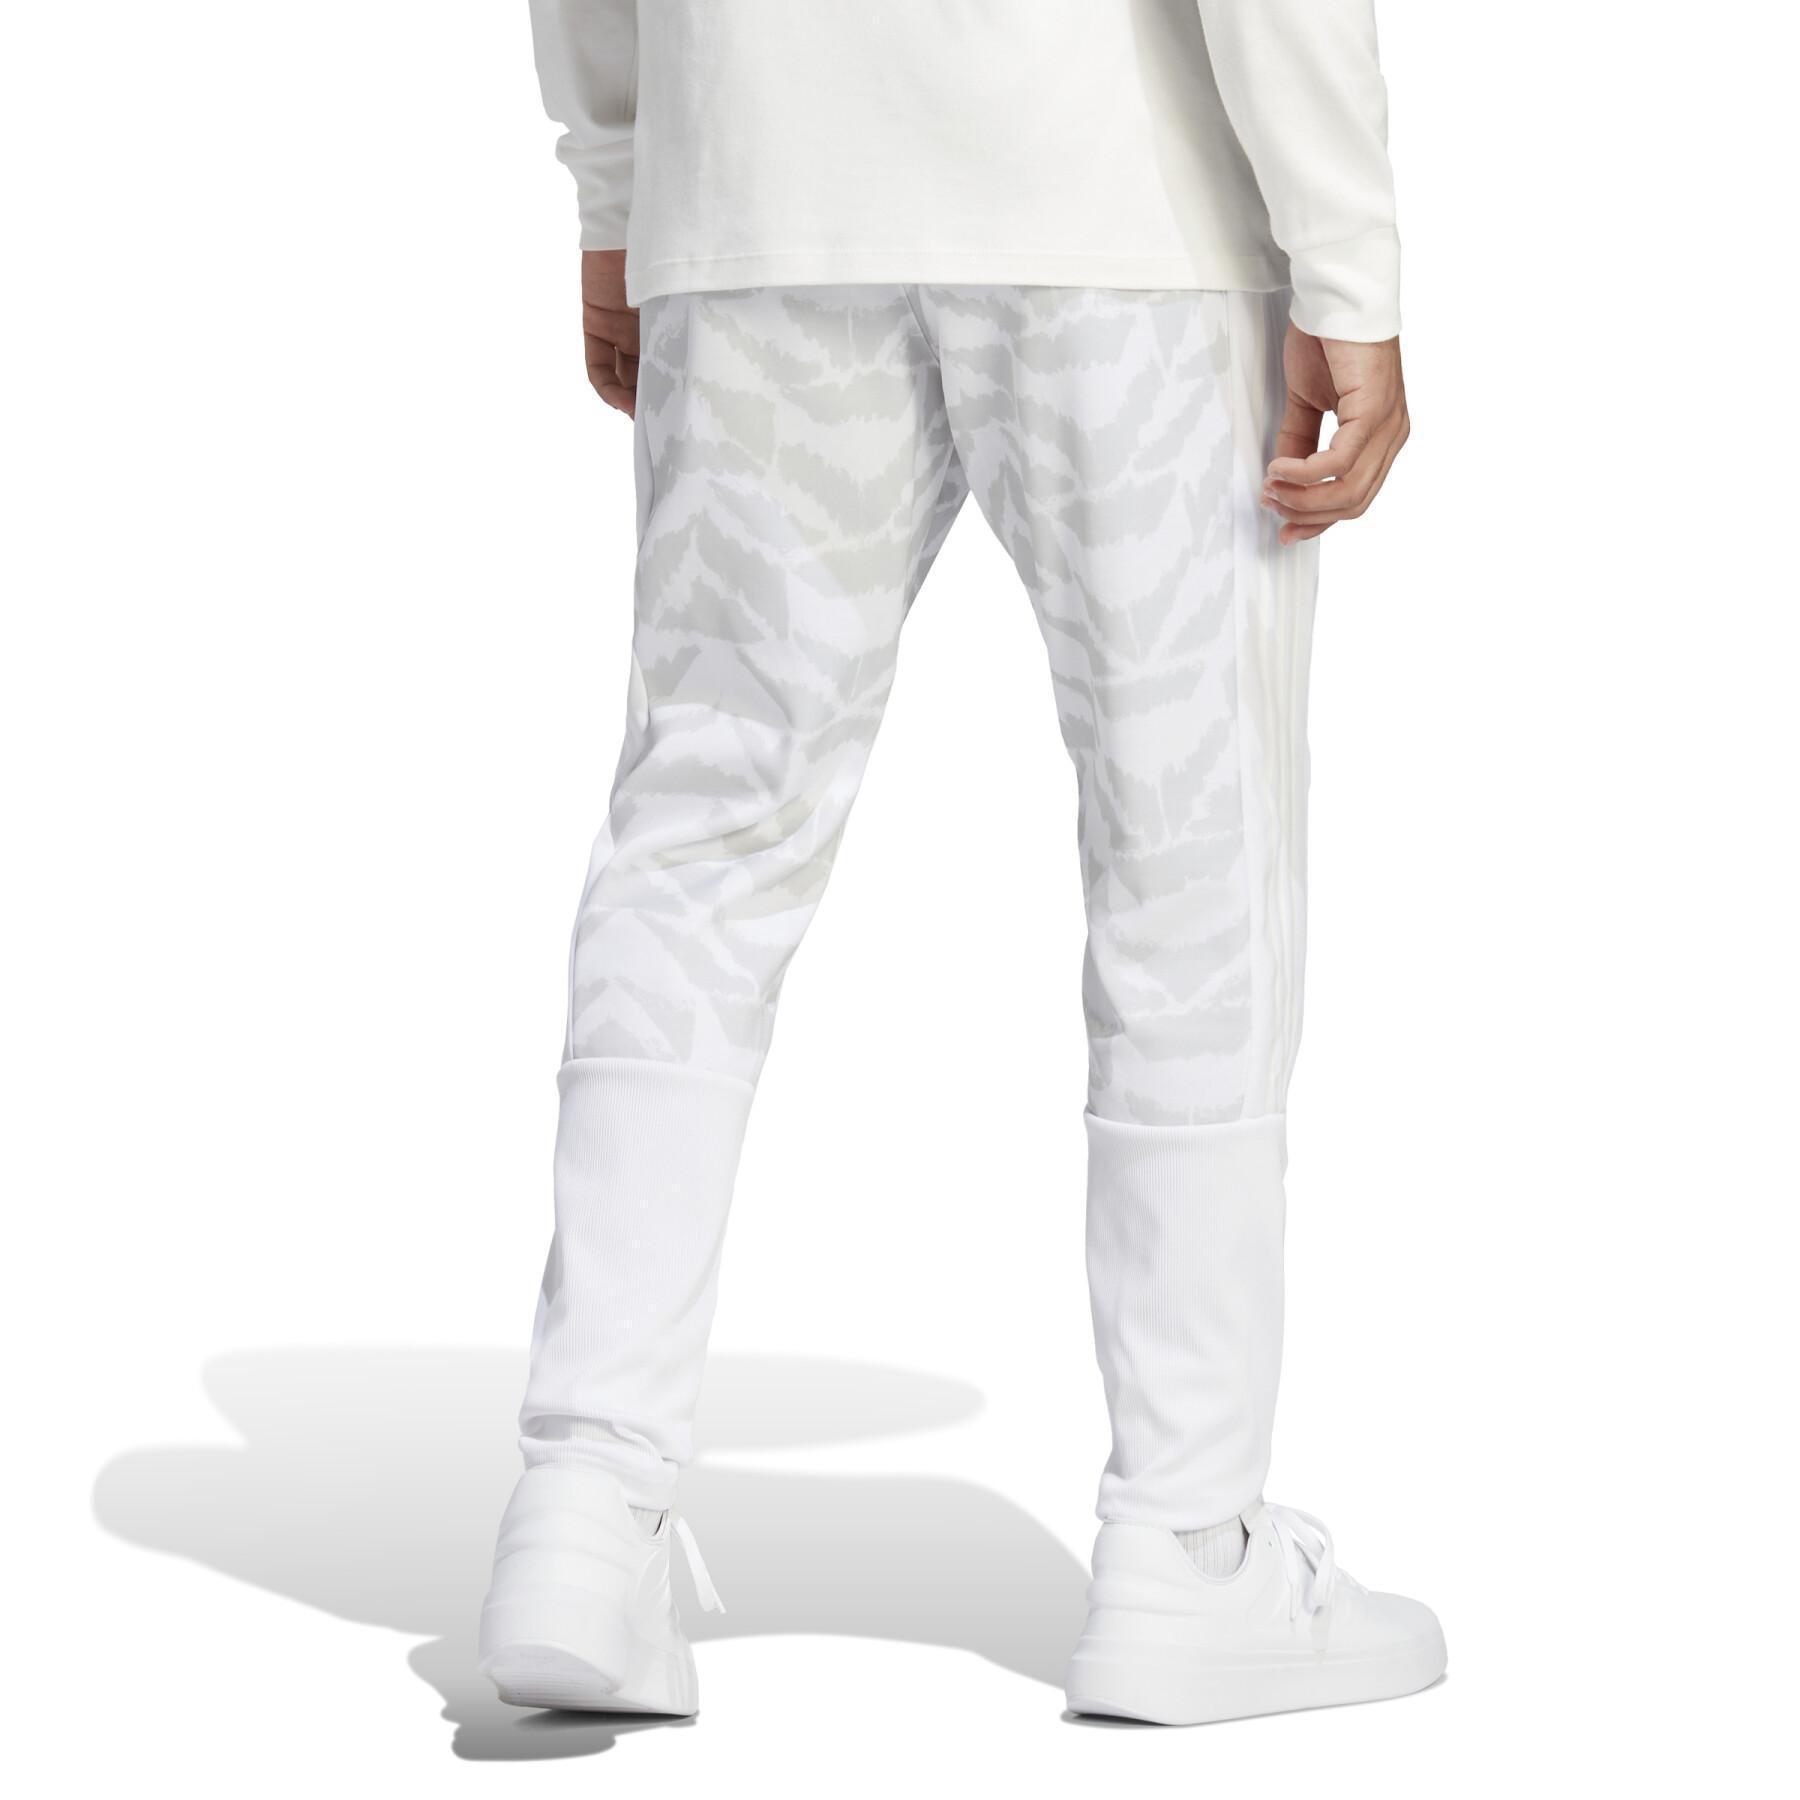 Pantalón de jogging adidas Tiro Suit-Up Lifestyle